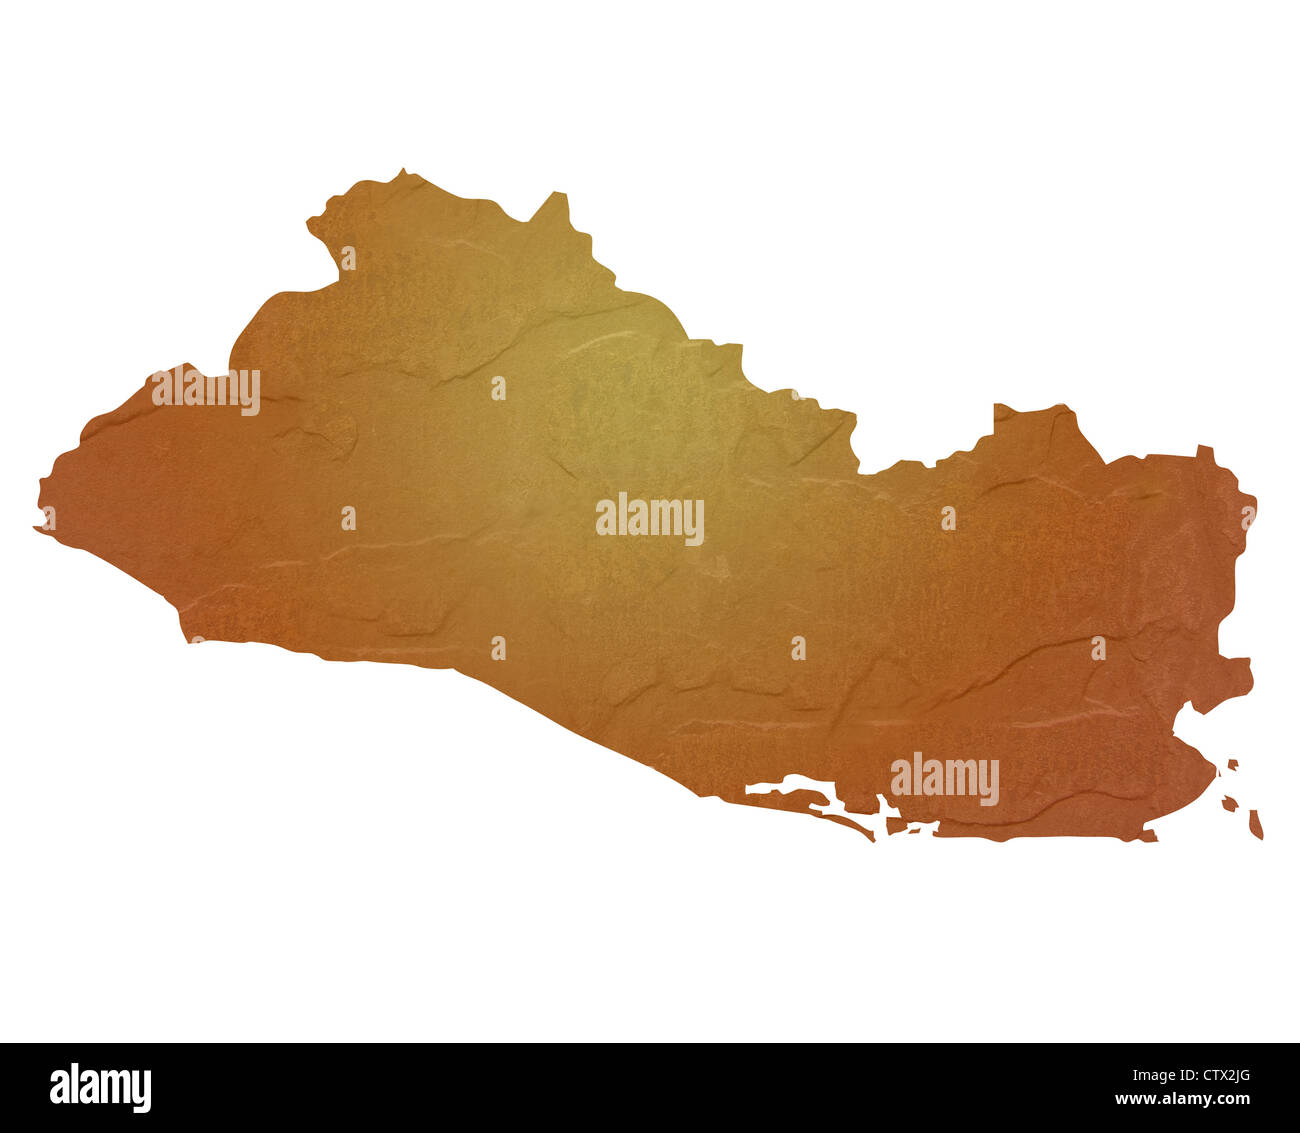 Textured mappa di El Salvador mappa marrone con sasso o pietra texture, isolato su sfondo bianco con percorso di clipping. Foto Stock